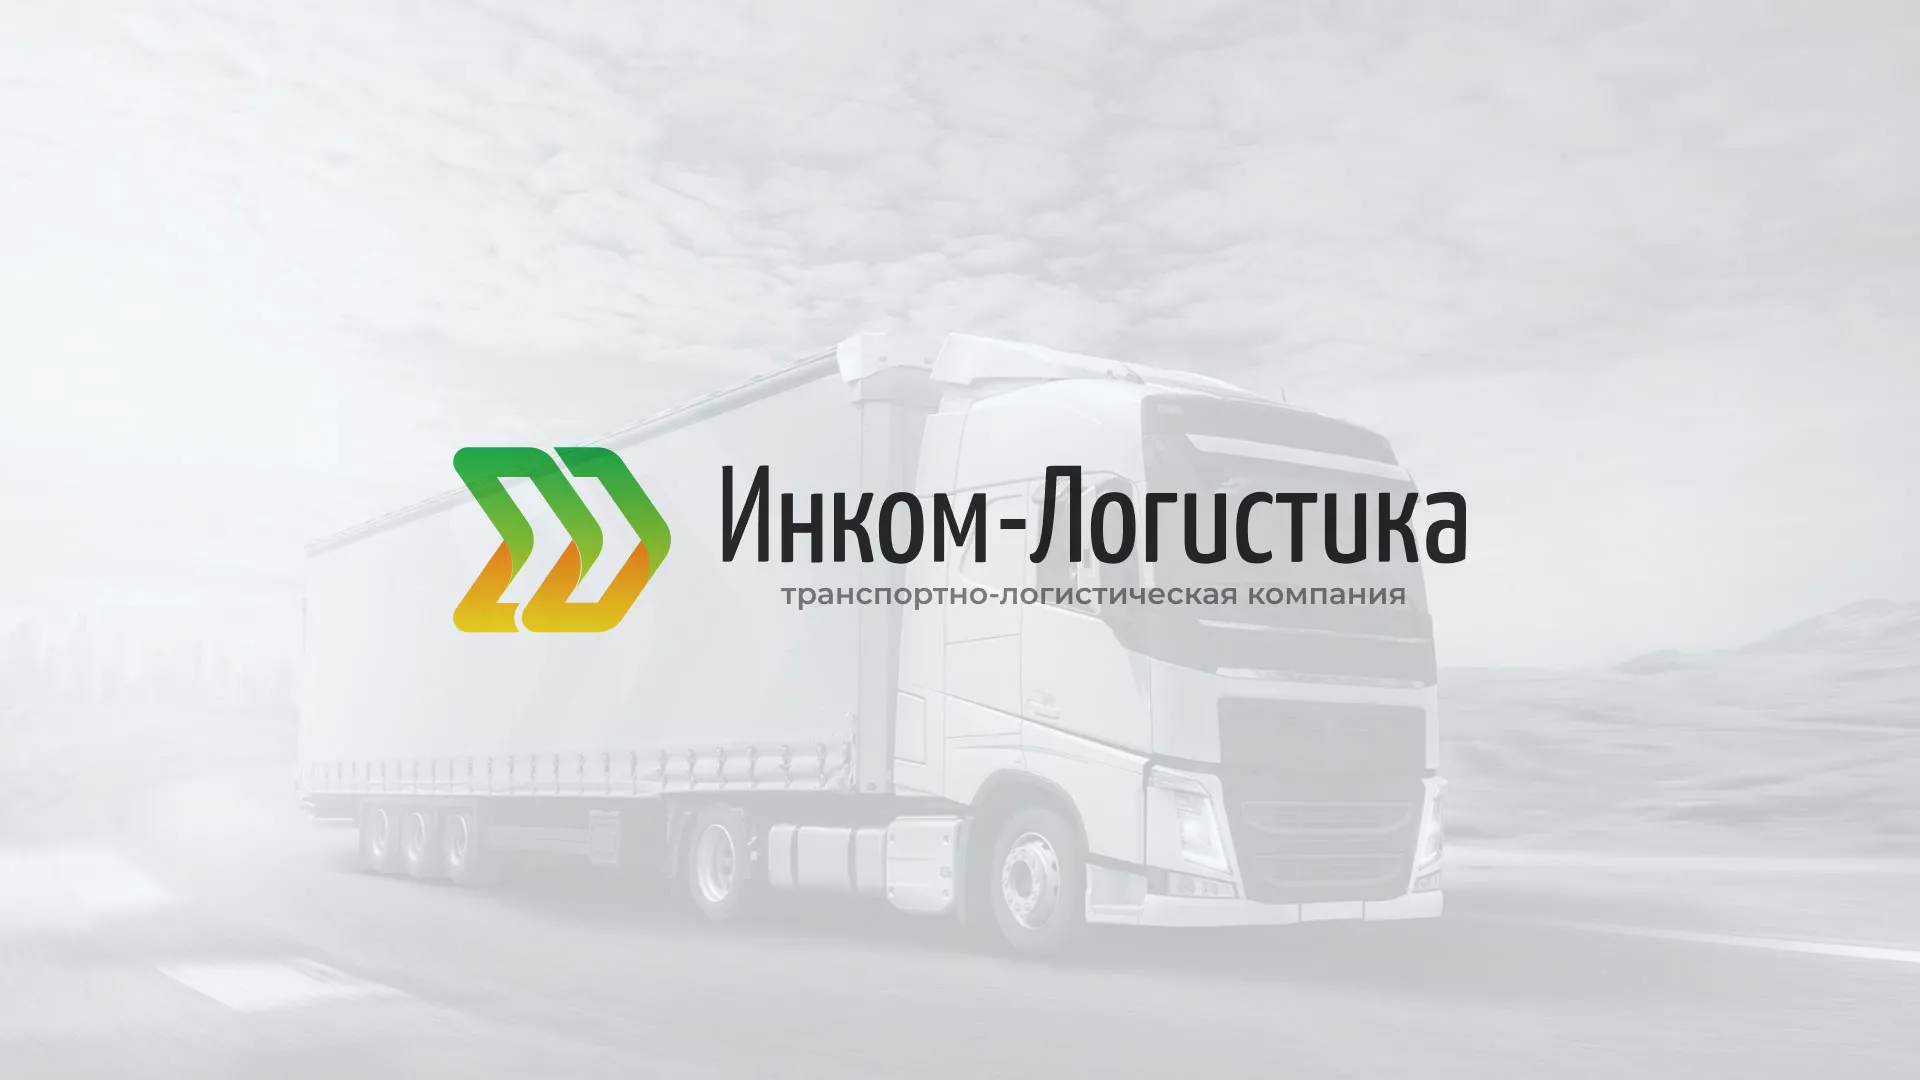 Разработка логотипа и сайта компании «Инком-Логистика» в Сургуте